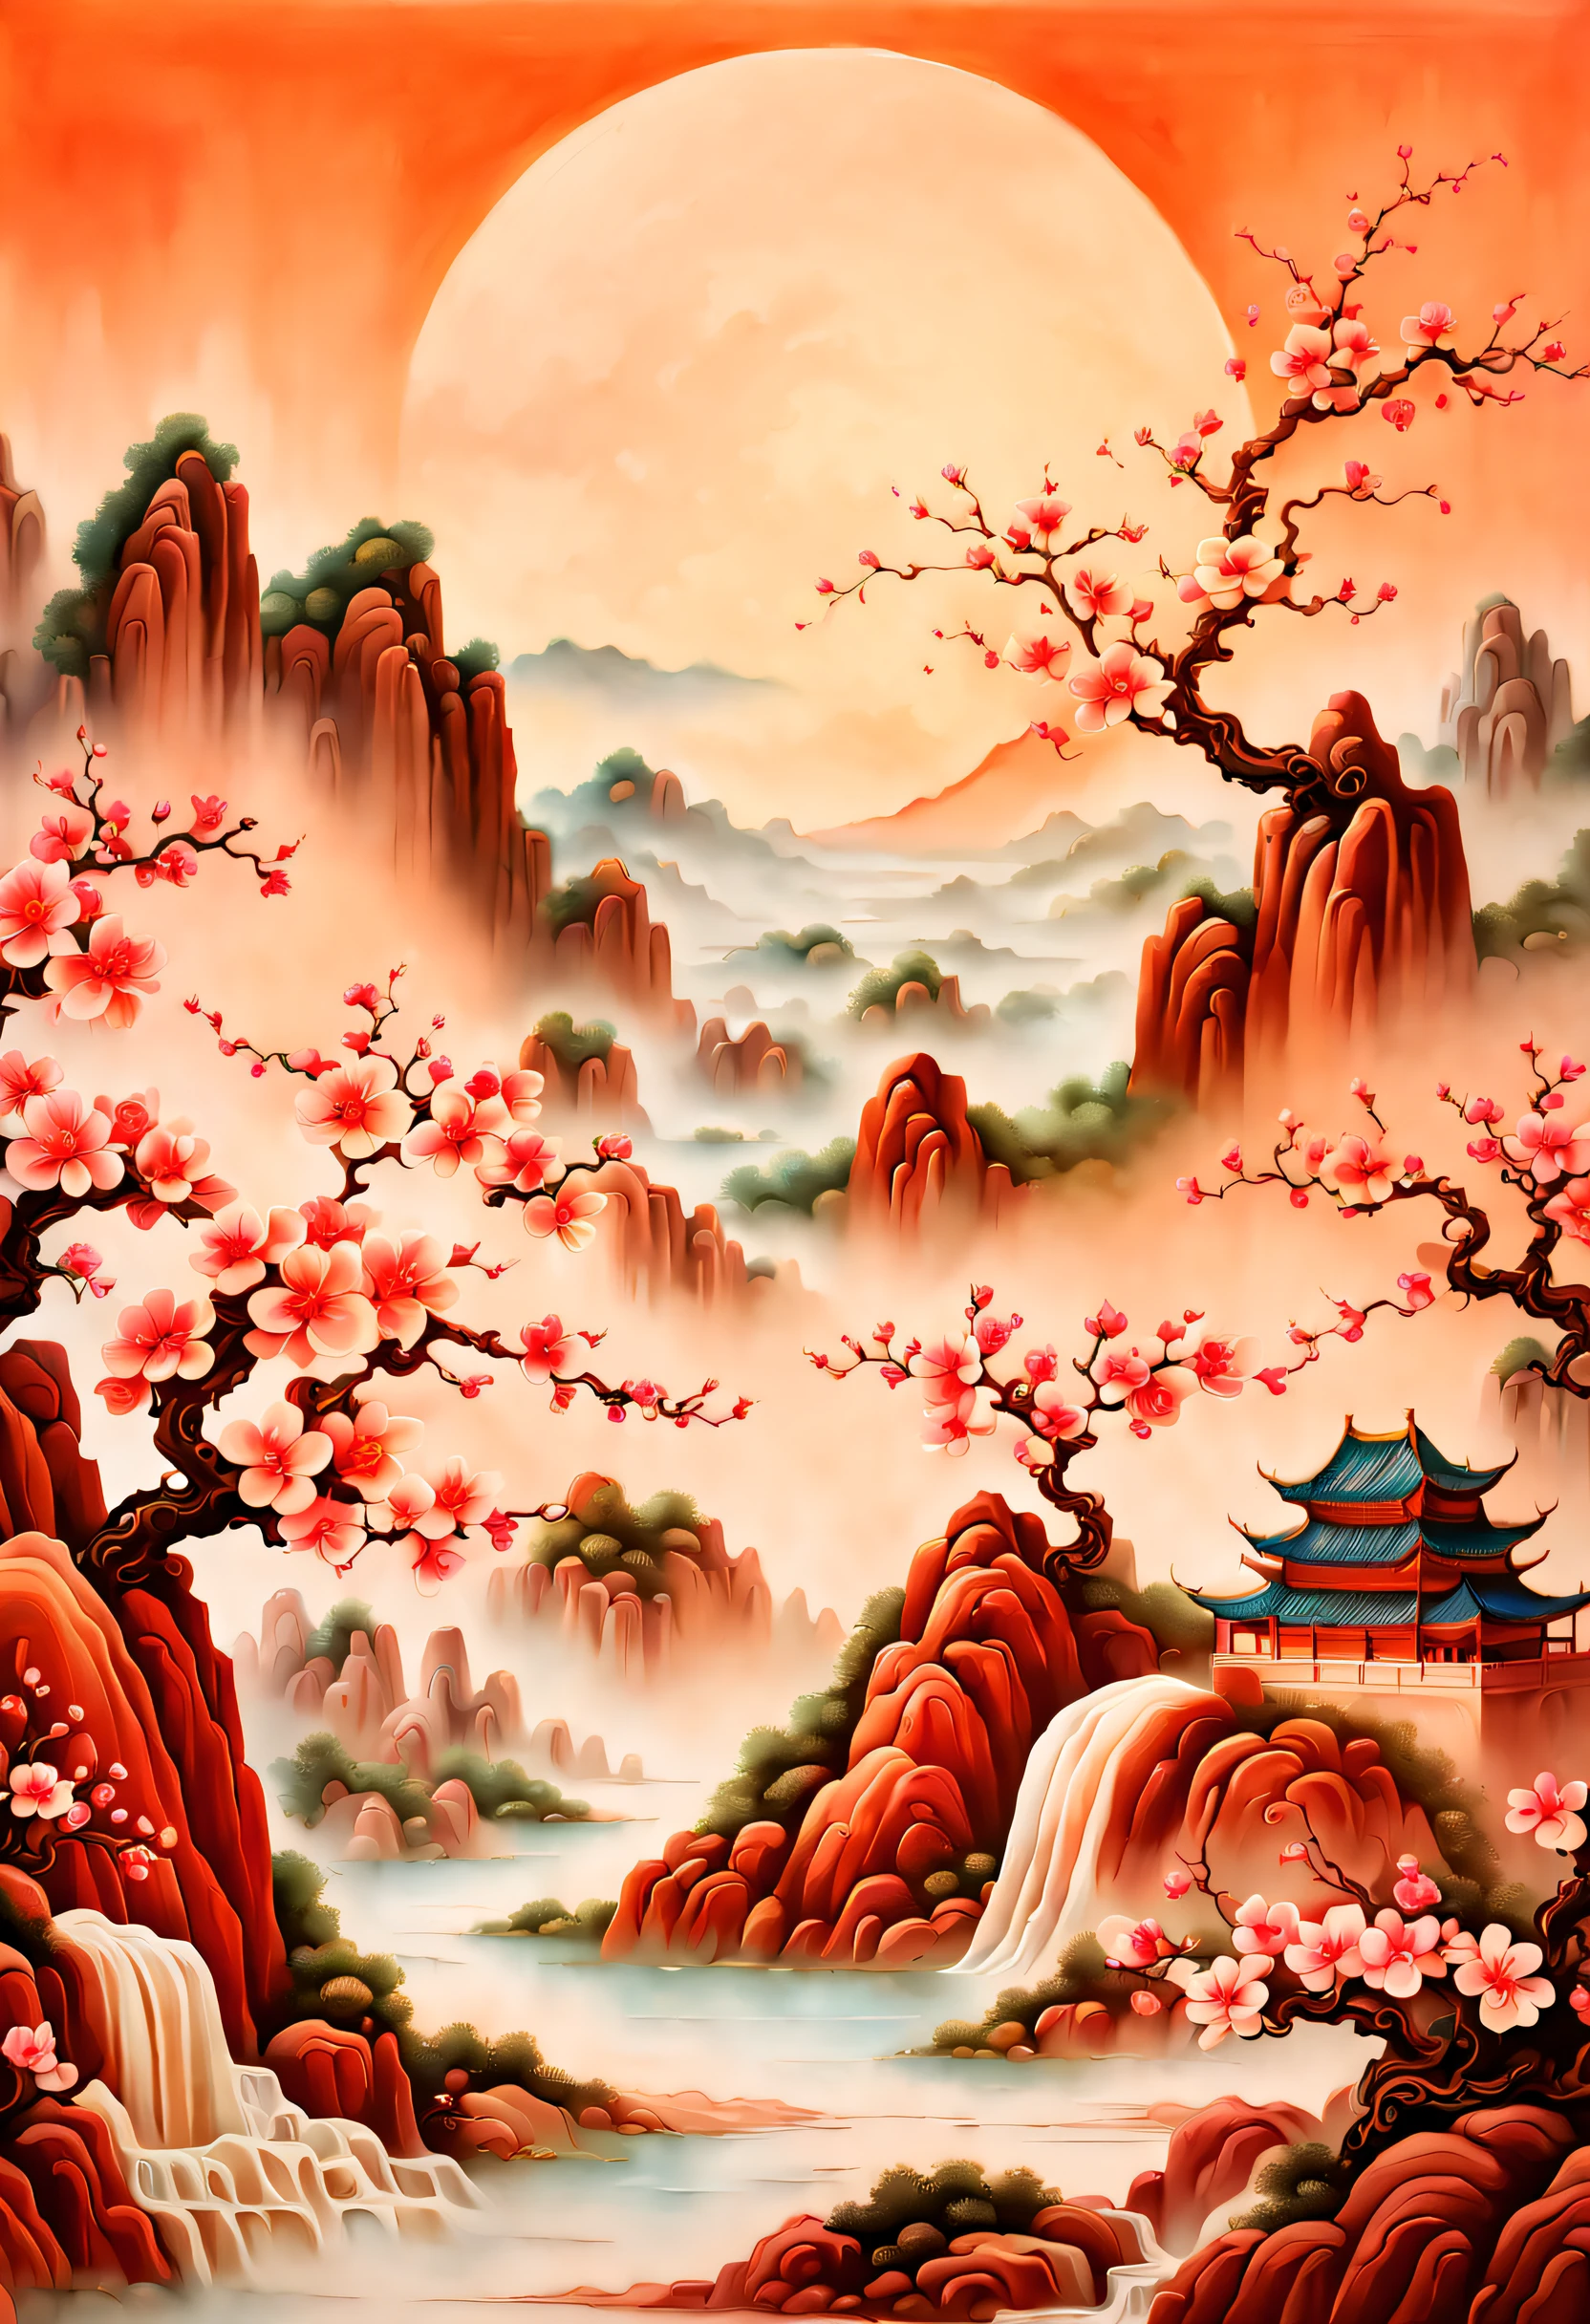 (шедевр, высокое качество, Лучшее качество, официальное искусство, красота и эстетика: 1.2), чашка чая с молоком, окружен красными скалами, брызги брызг, (Китайская пейзажная резьба по бумаге, Китайская пейзажная живопись династии Сун: 1.2), (Сюрреалистический стиль мечты), кремовая органическая жидкость, Трассировка света, экологическая защита, туманный, естественный свет, известняк, Лист гелевой смолы, OC-рендеринг, (лесной фон персикового цвета: 1.4),